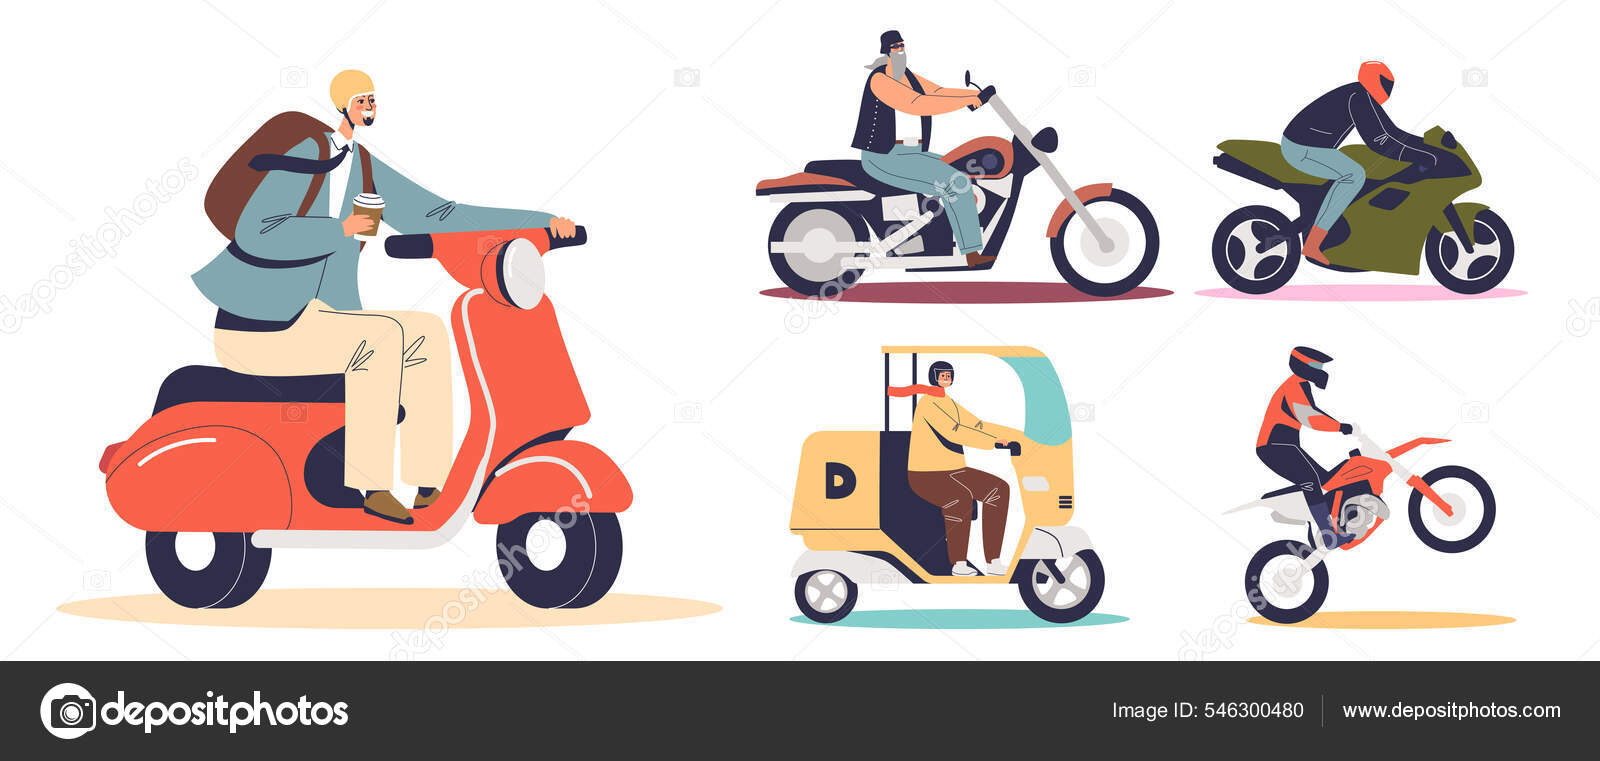 Conjunto de vetores de bicicleta, scooter e motos dos desenhos